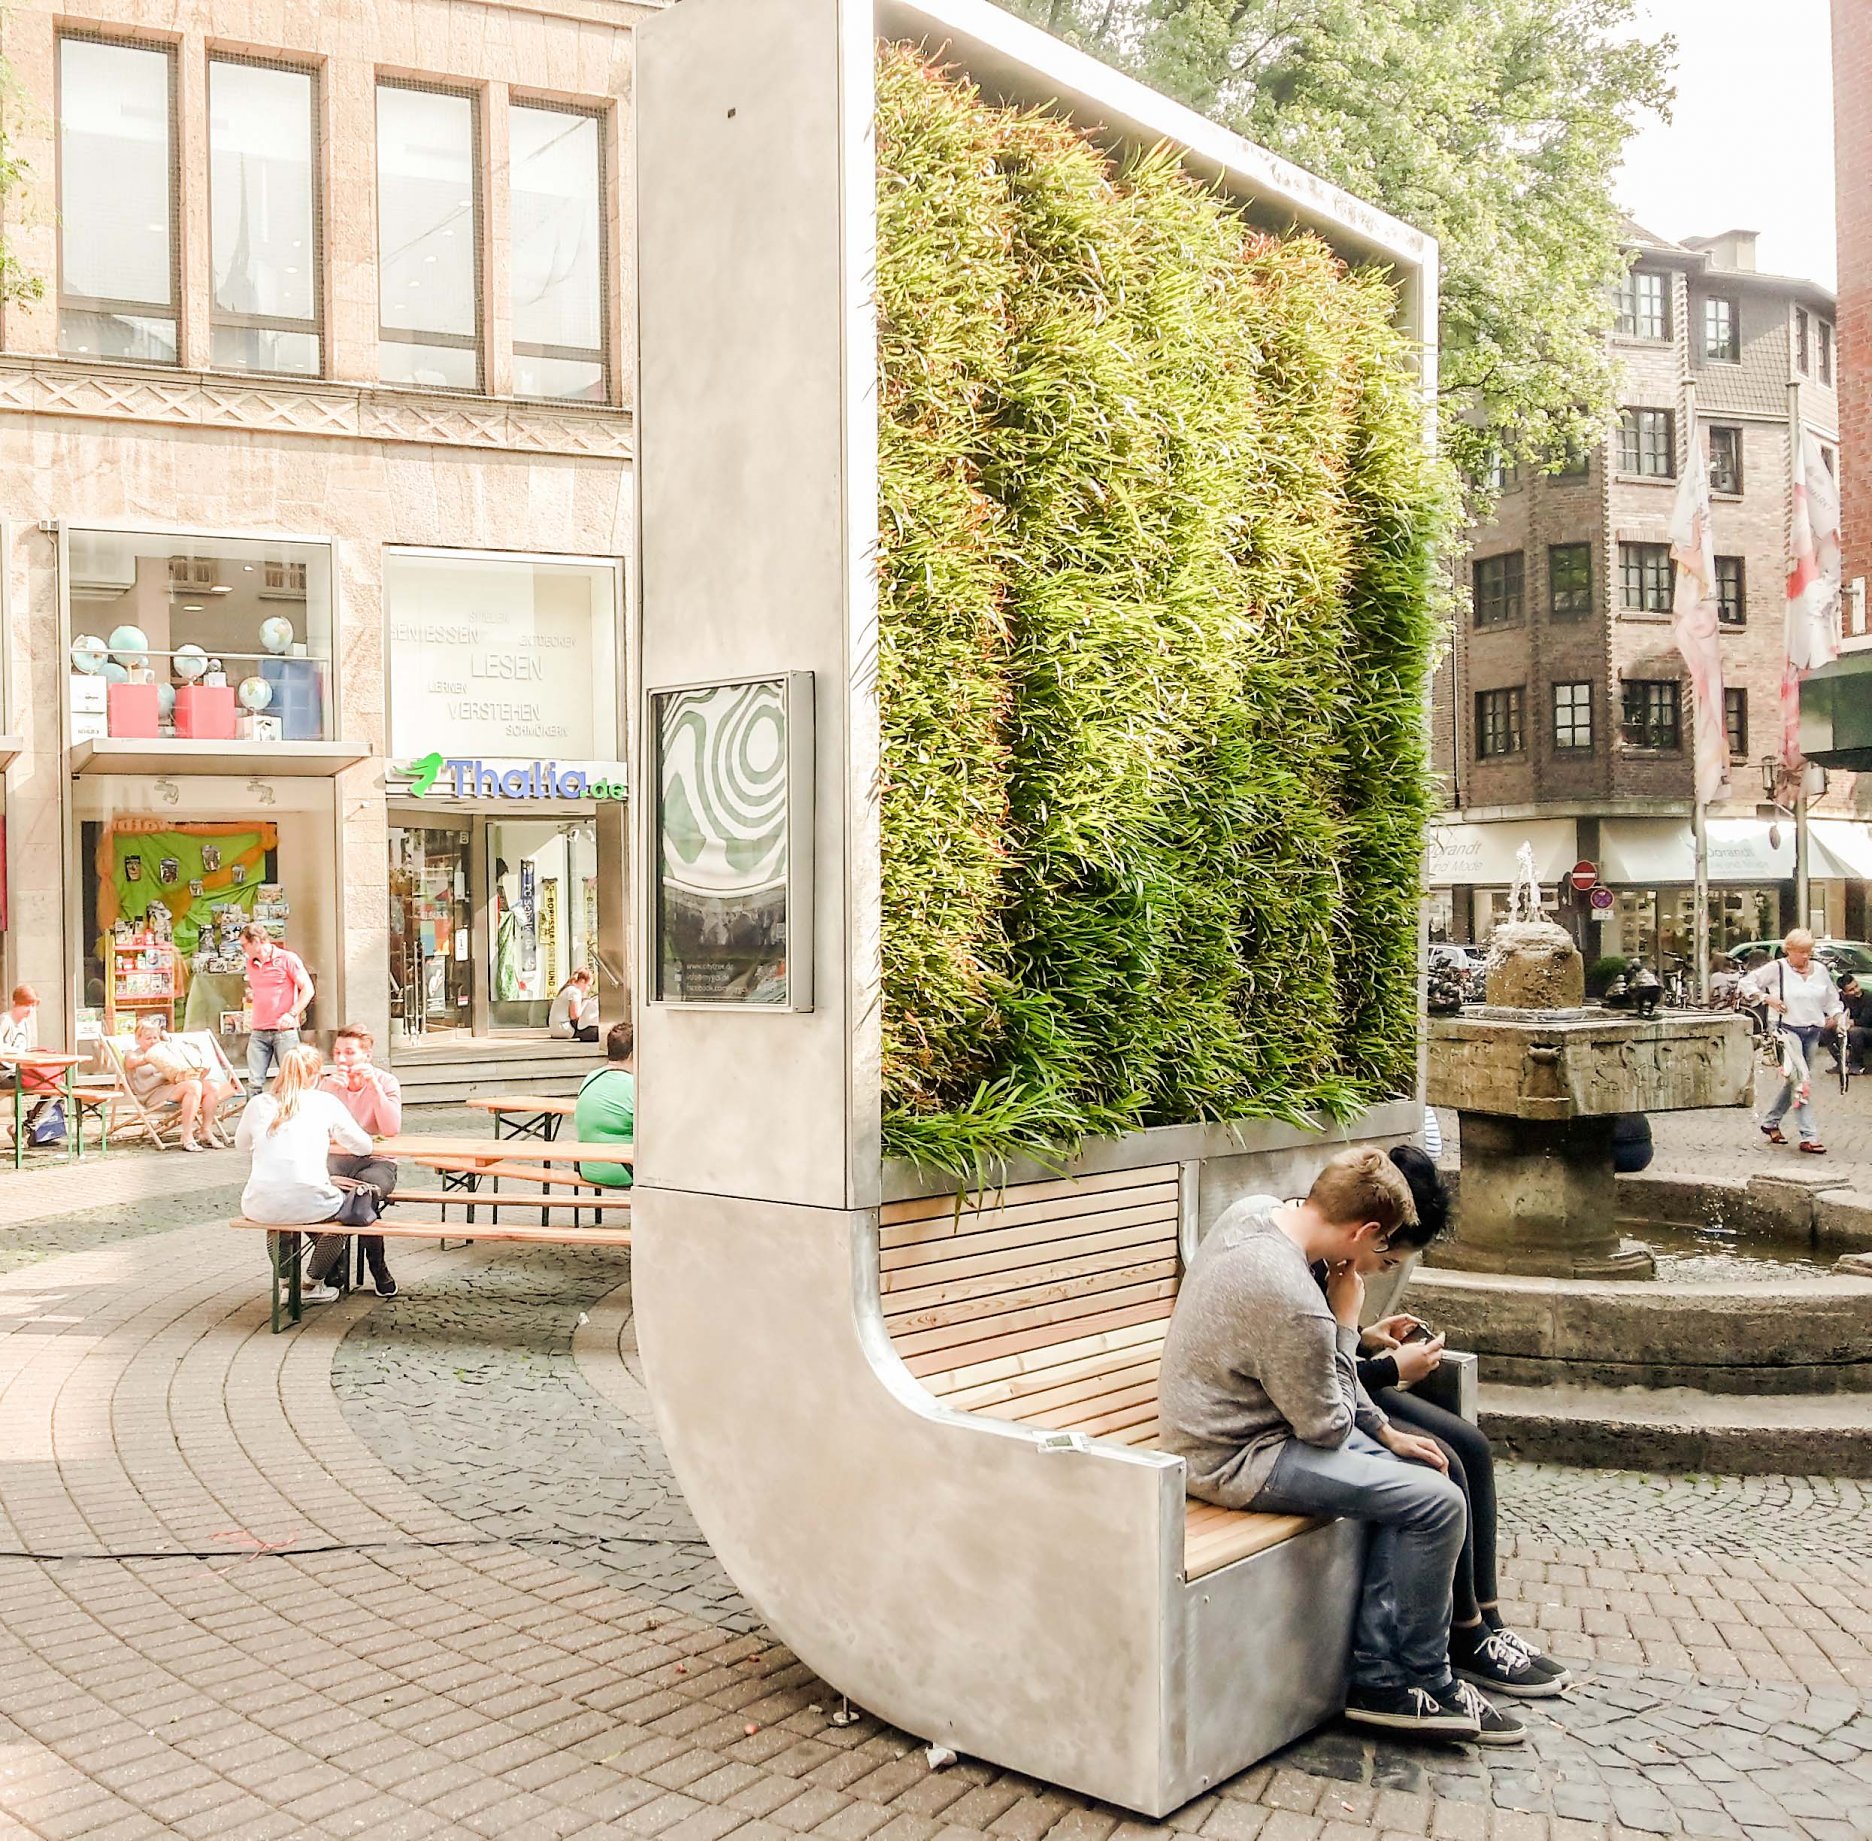 Berlínska spoločnosť Green city solutions ponúka sofistikovaný mestský mobiliár so stenou z machu a lišajníku. Využíva schopnosť rastlín filtrovať znečistenie a viazať pevné častice zo vzduchu na svôj povrch. Do systému mobiliáru sú integrované senzory pomocou, ktorých sú sledované najrôznejšie veličiny. Zariadenie je navyše prepojené s internetom, čo zefektivňuje celkový proces monitoringu.